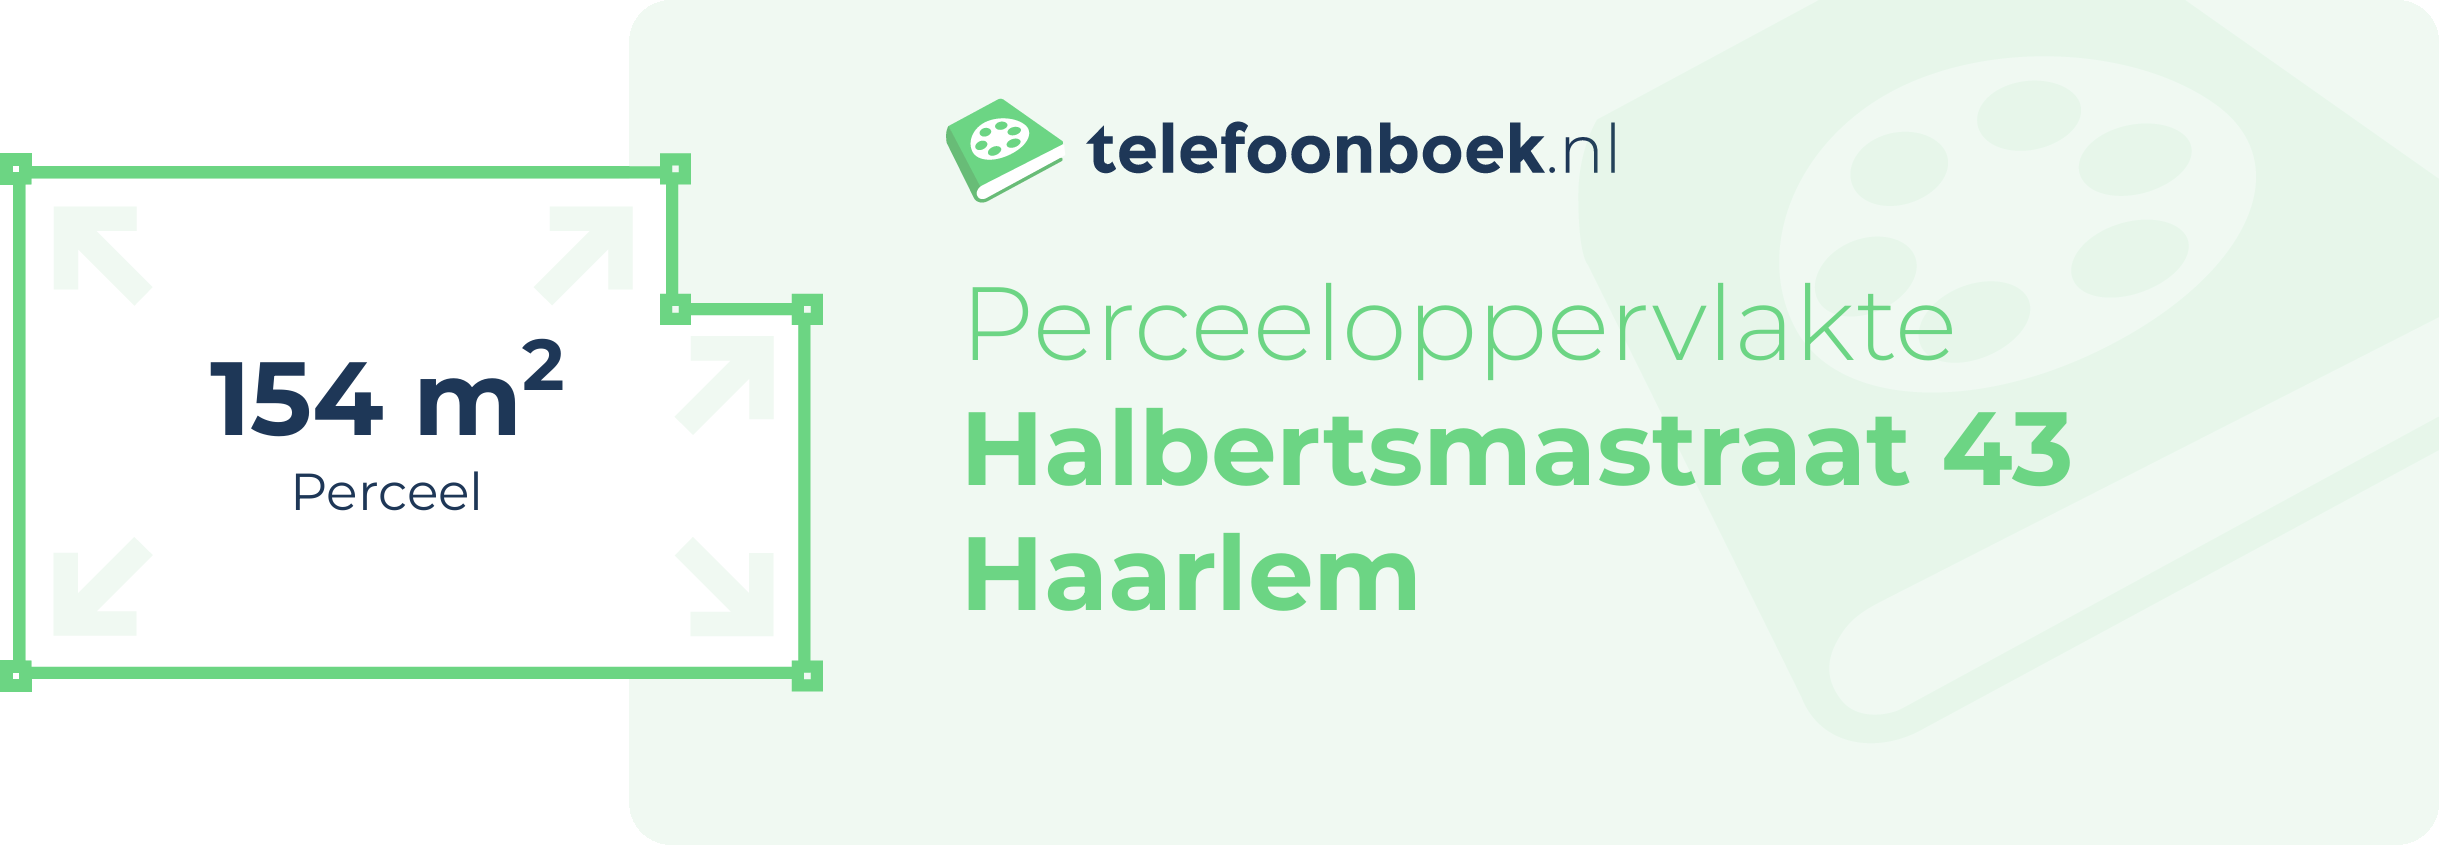 Perceeloppervlakte Halbertsmastraat 43 Haarlem